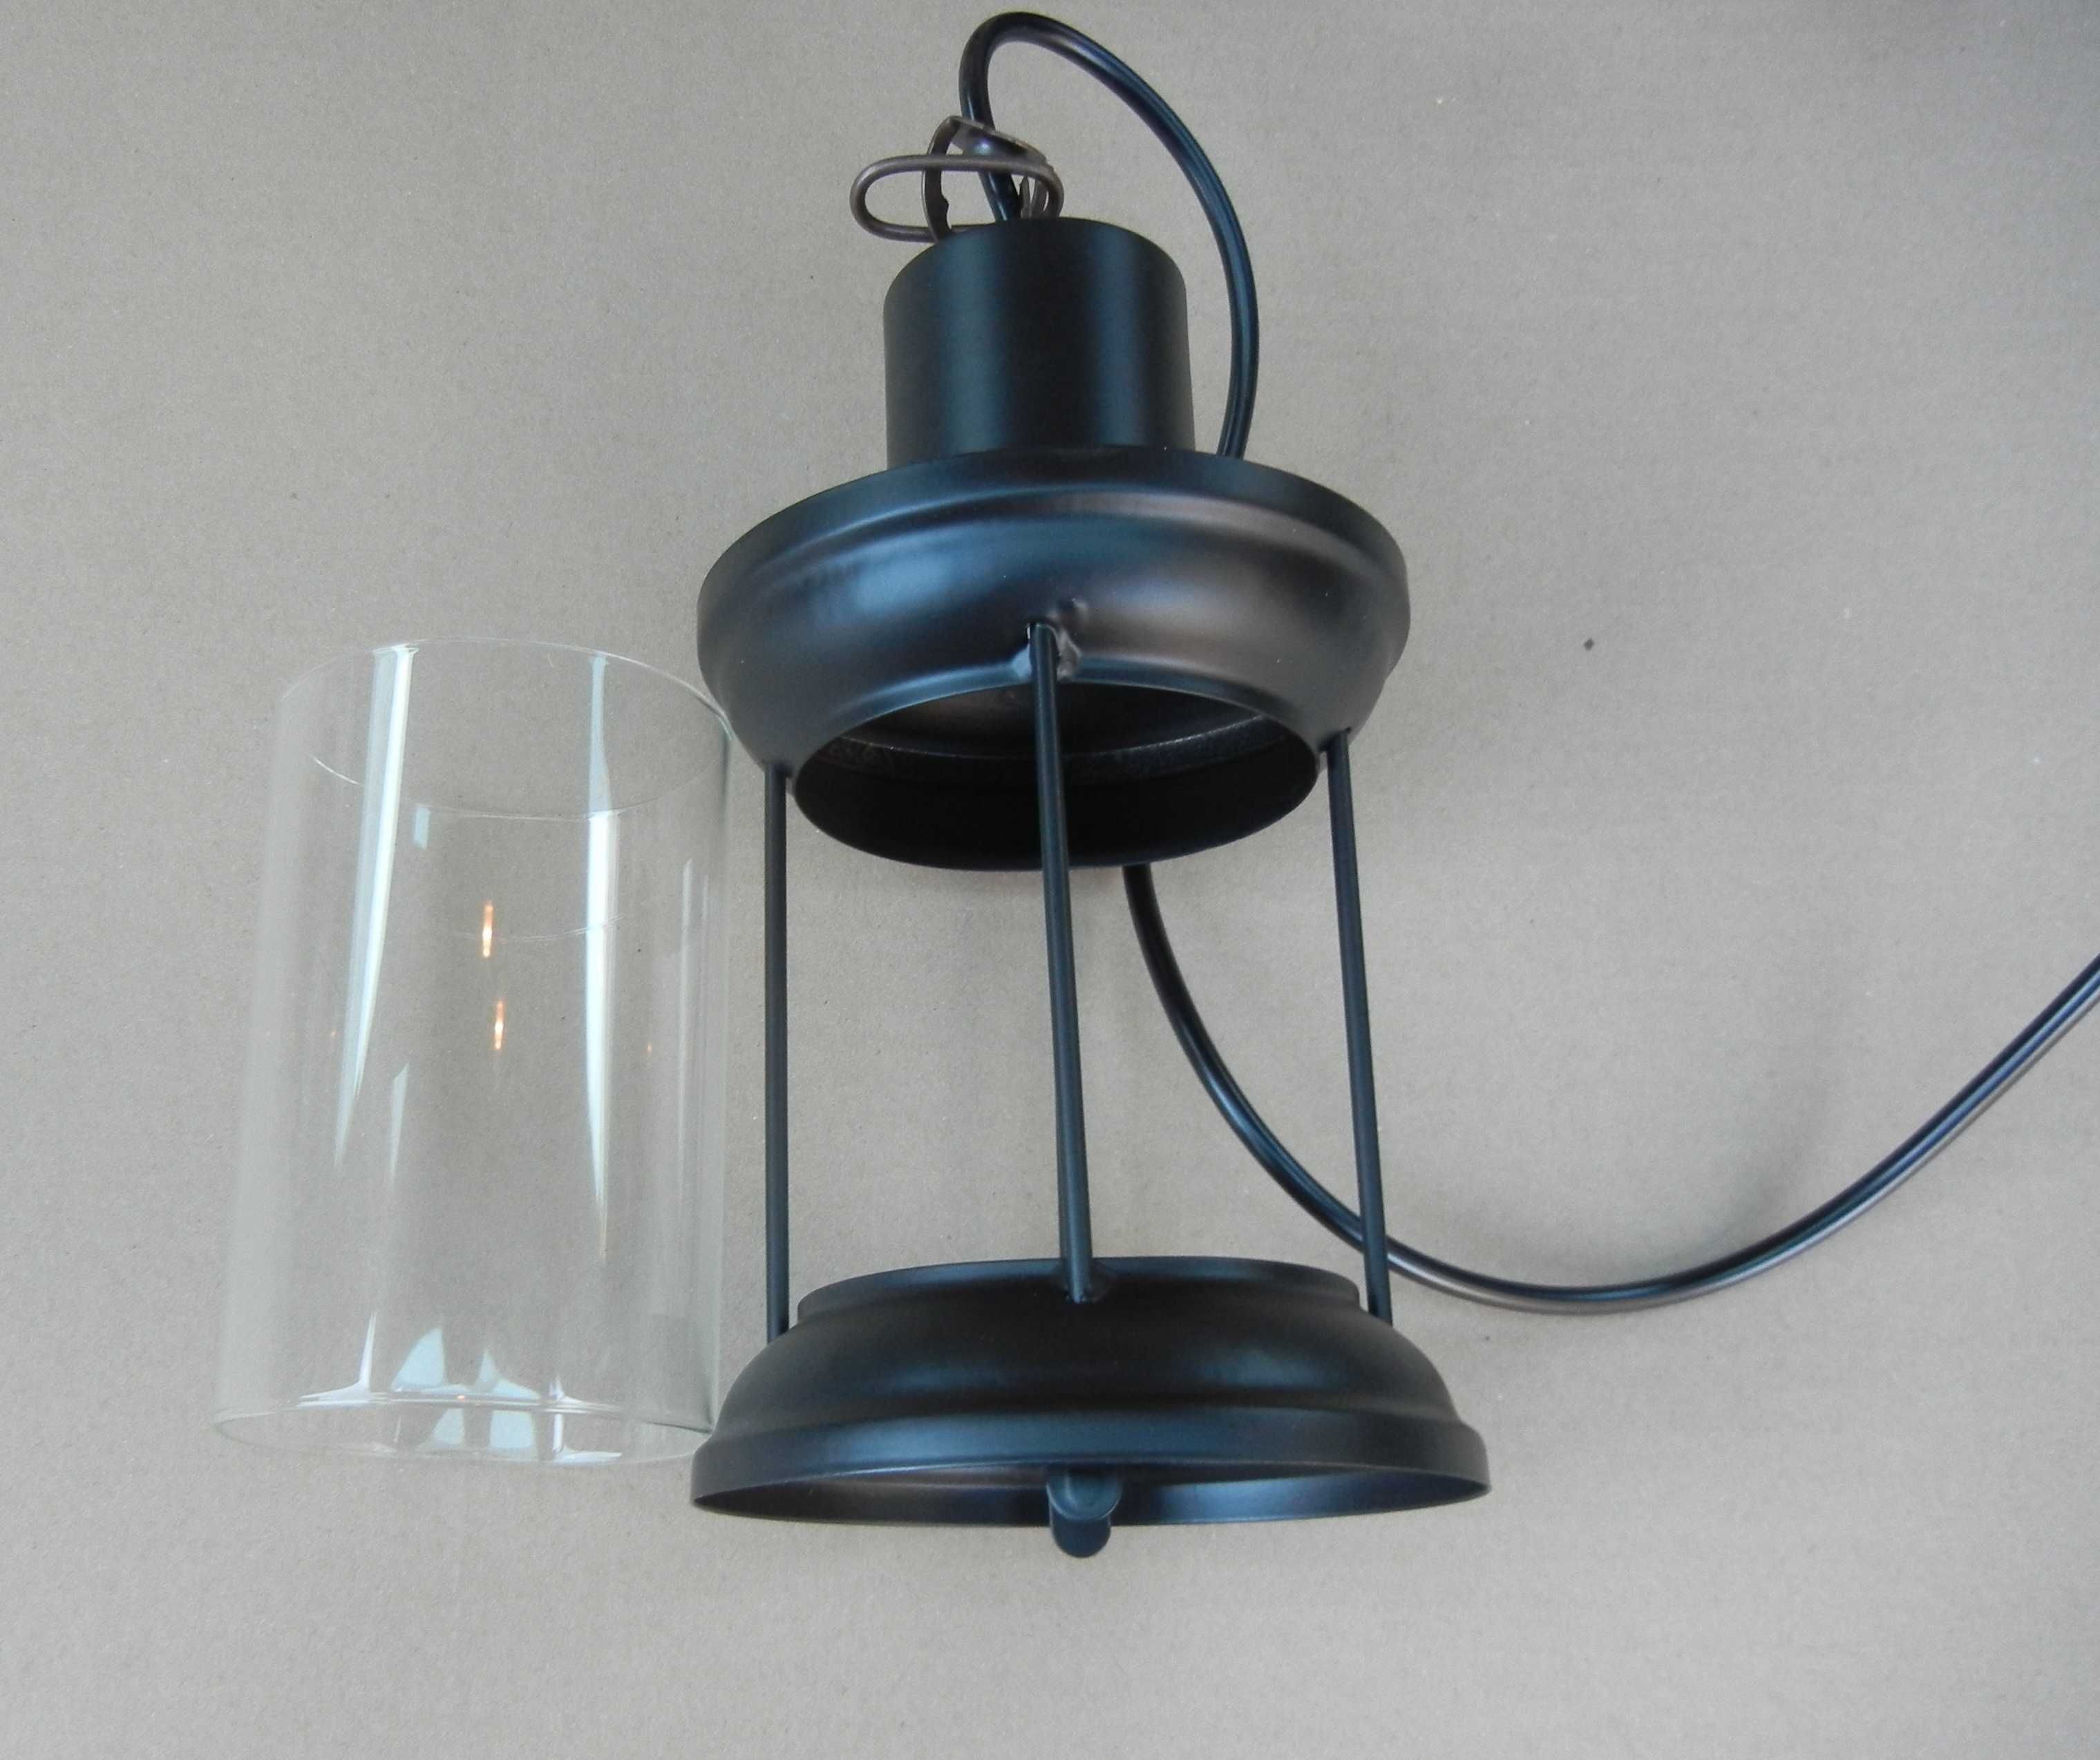 Lampa  oprawa  E27 w stylu retro stwórz własna lampę